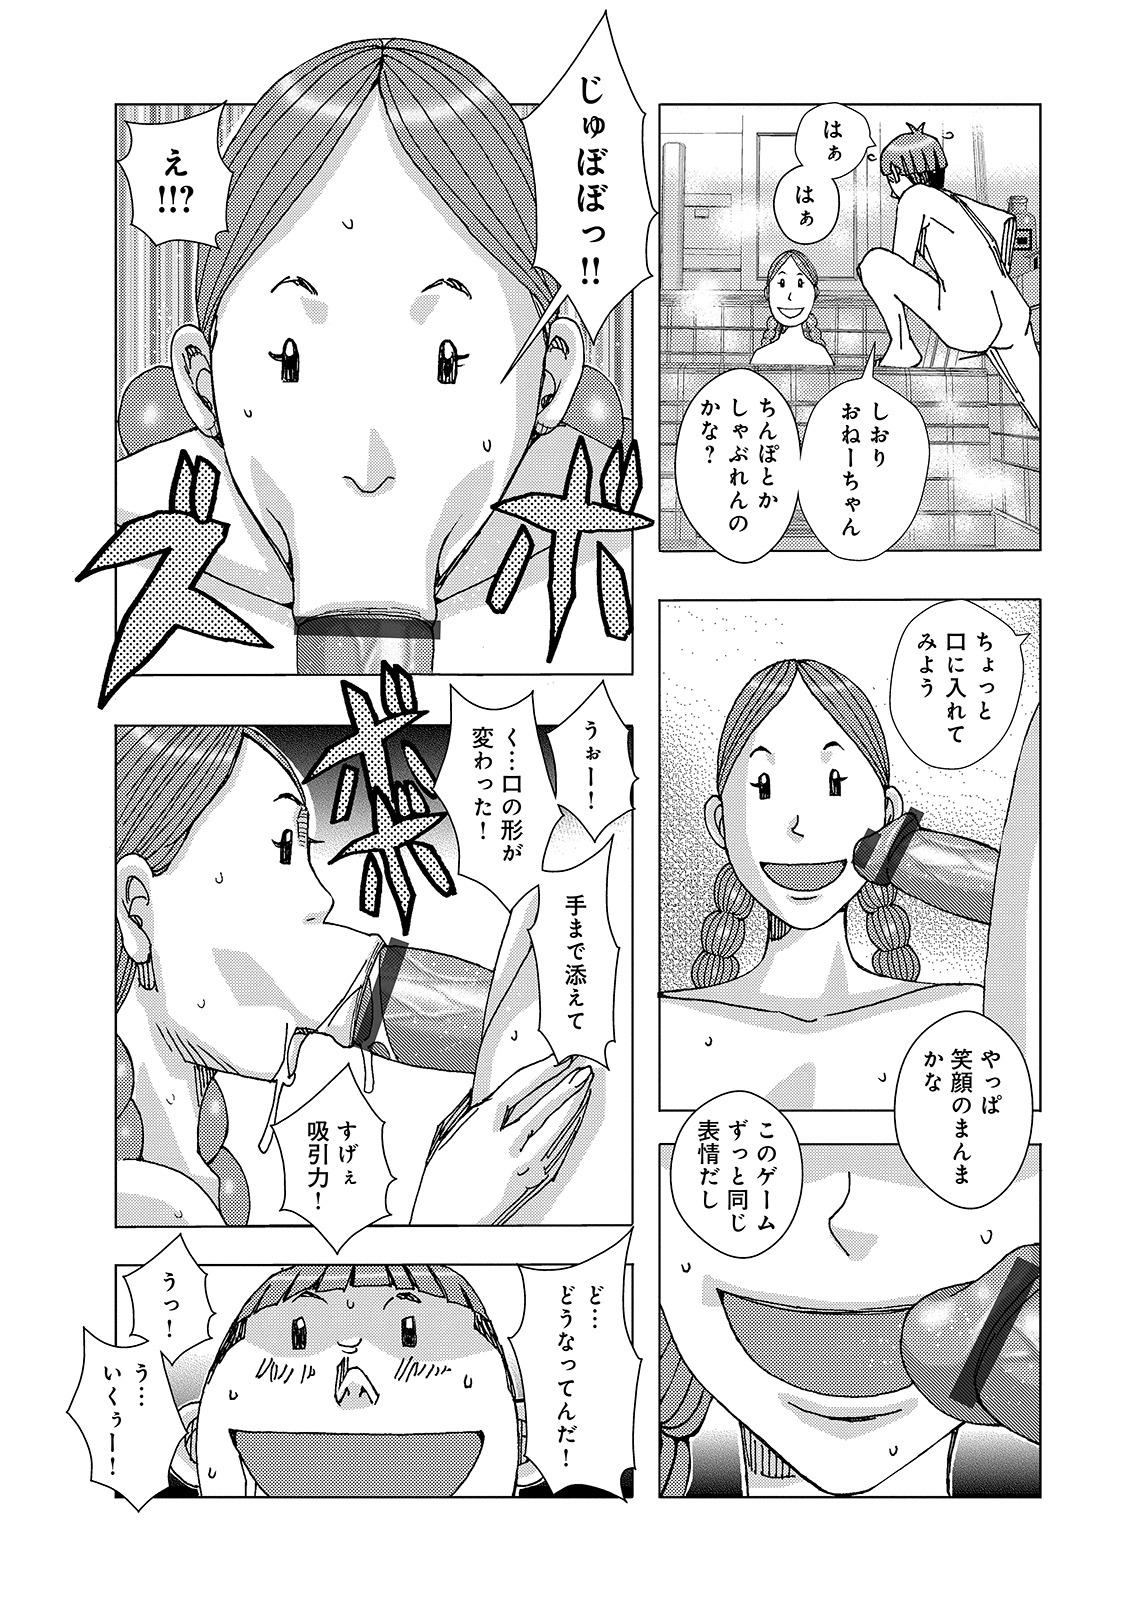 Bottom Kubo no Natsuyasumi ver. 1.0 From - Page 9